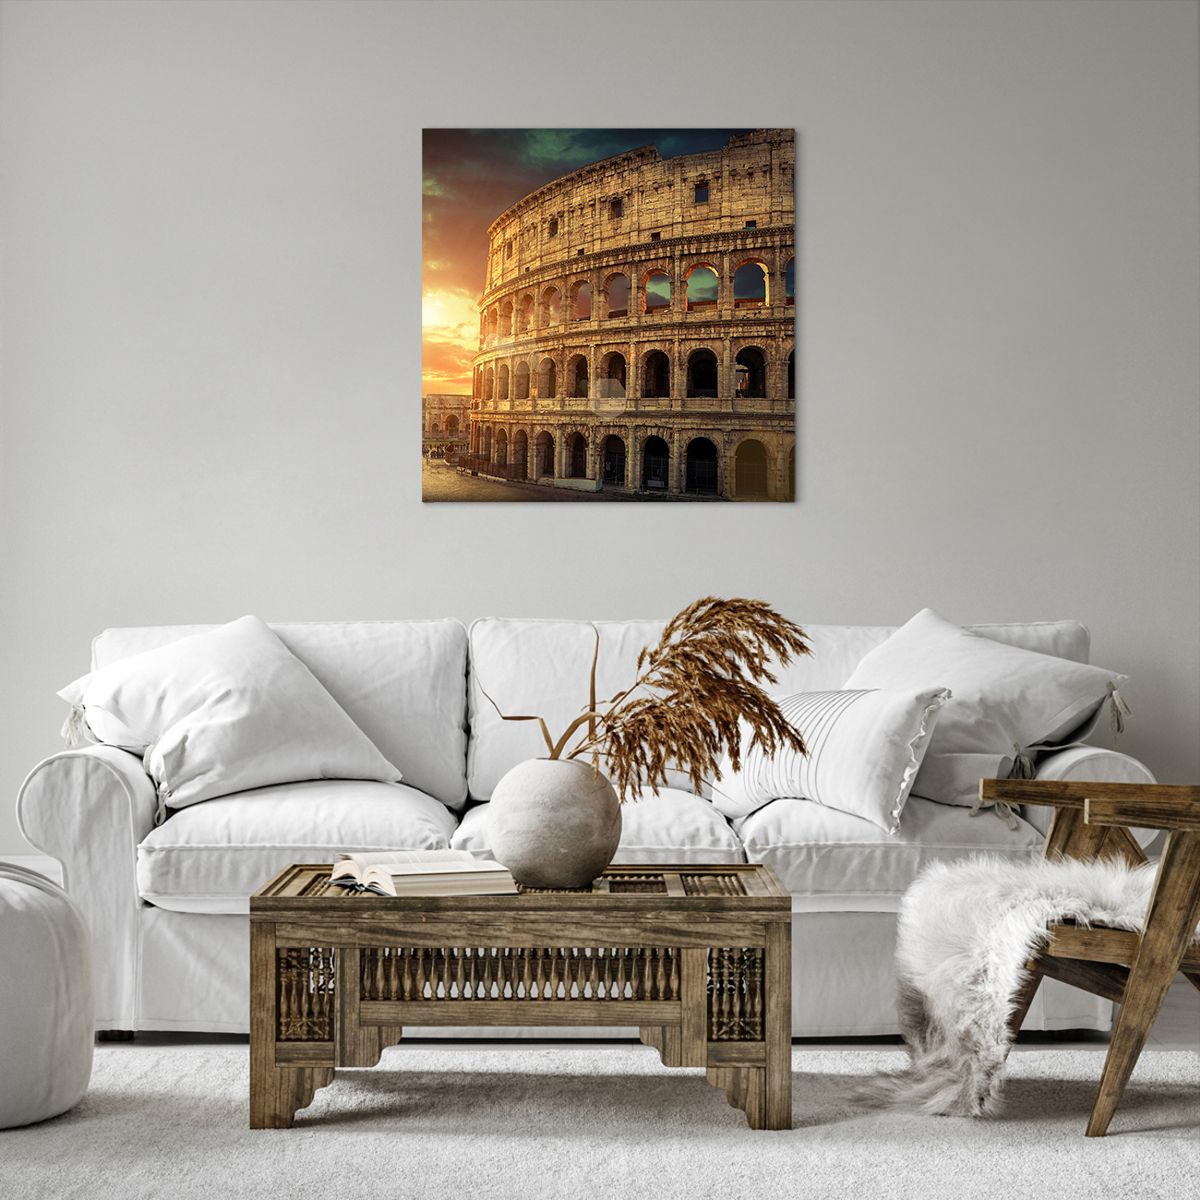 Obrazy na płótnie Koloseum, Obrazy na płótnie Rzym, Obrazy na płótnie Architektura, Obrazy na płótnie Włochy, Obrazy na płótnie Kultura